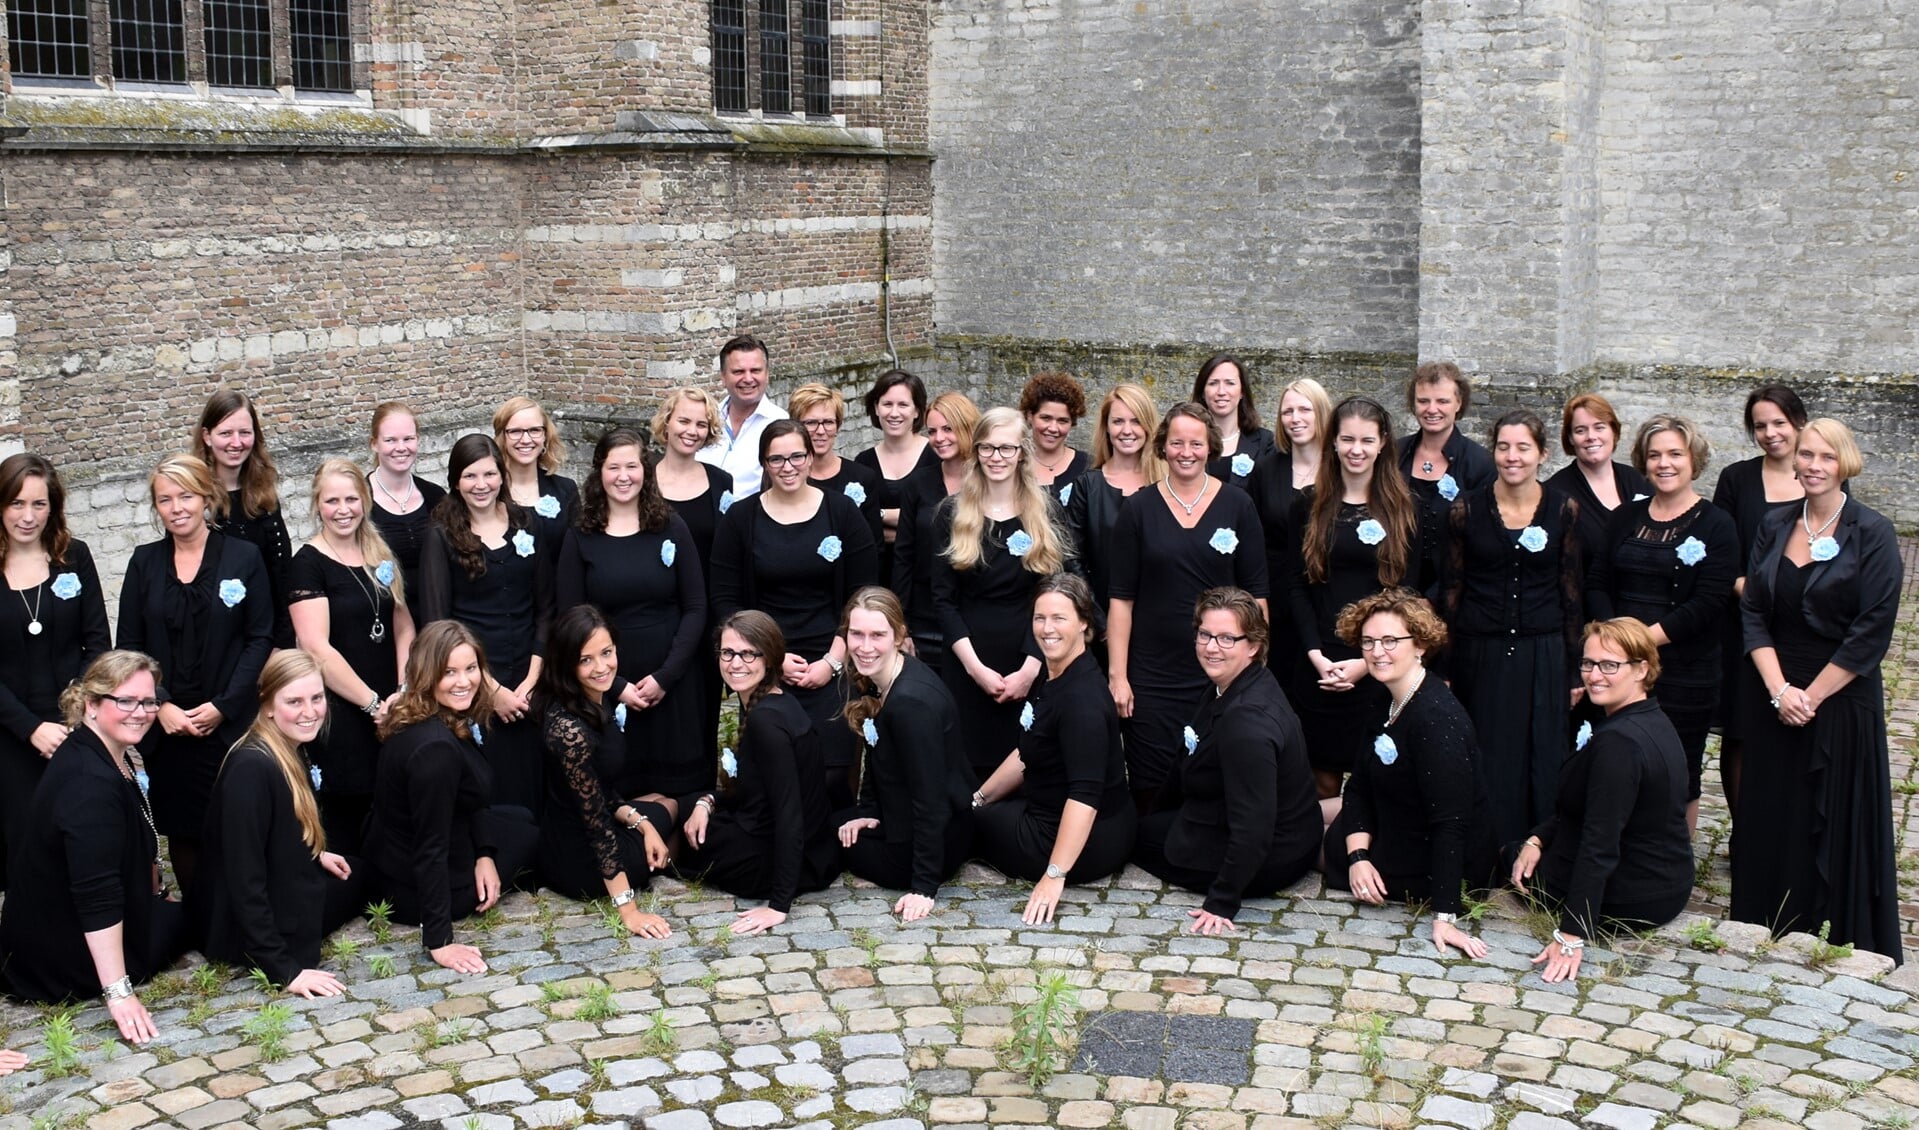 Het koor is op zoek naar nieuwe leden, naar gemotiveerde jonge dames die graag zingen en studeren, en staan voor een uniek repertoire. 